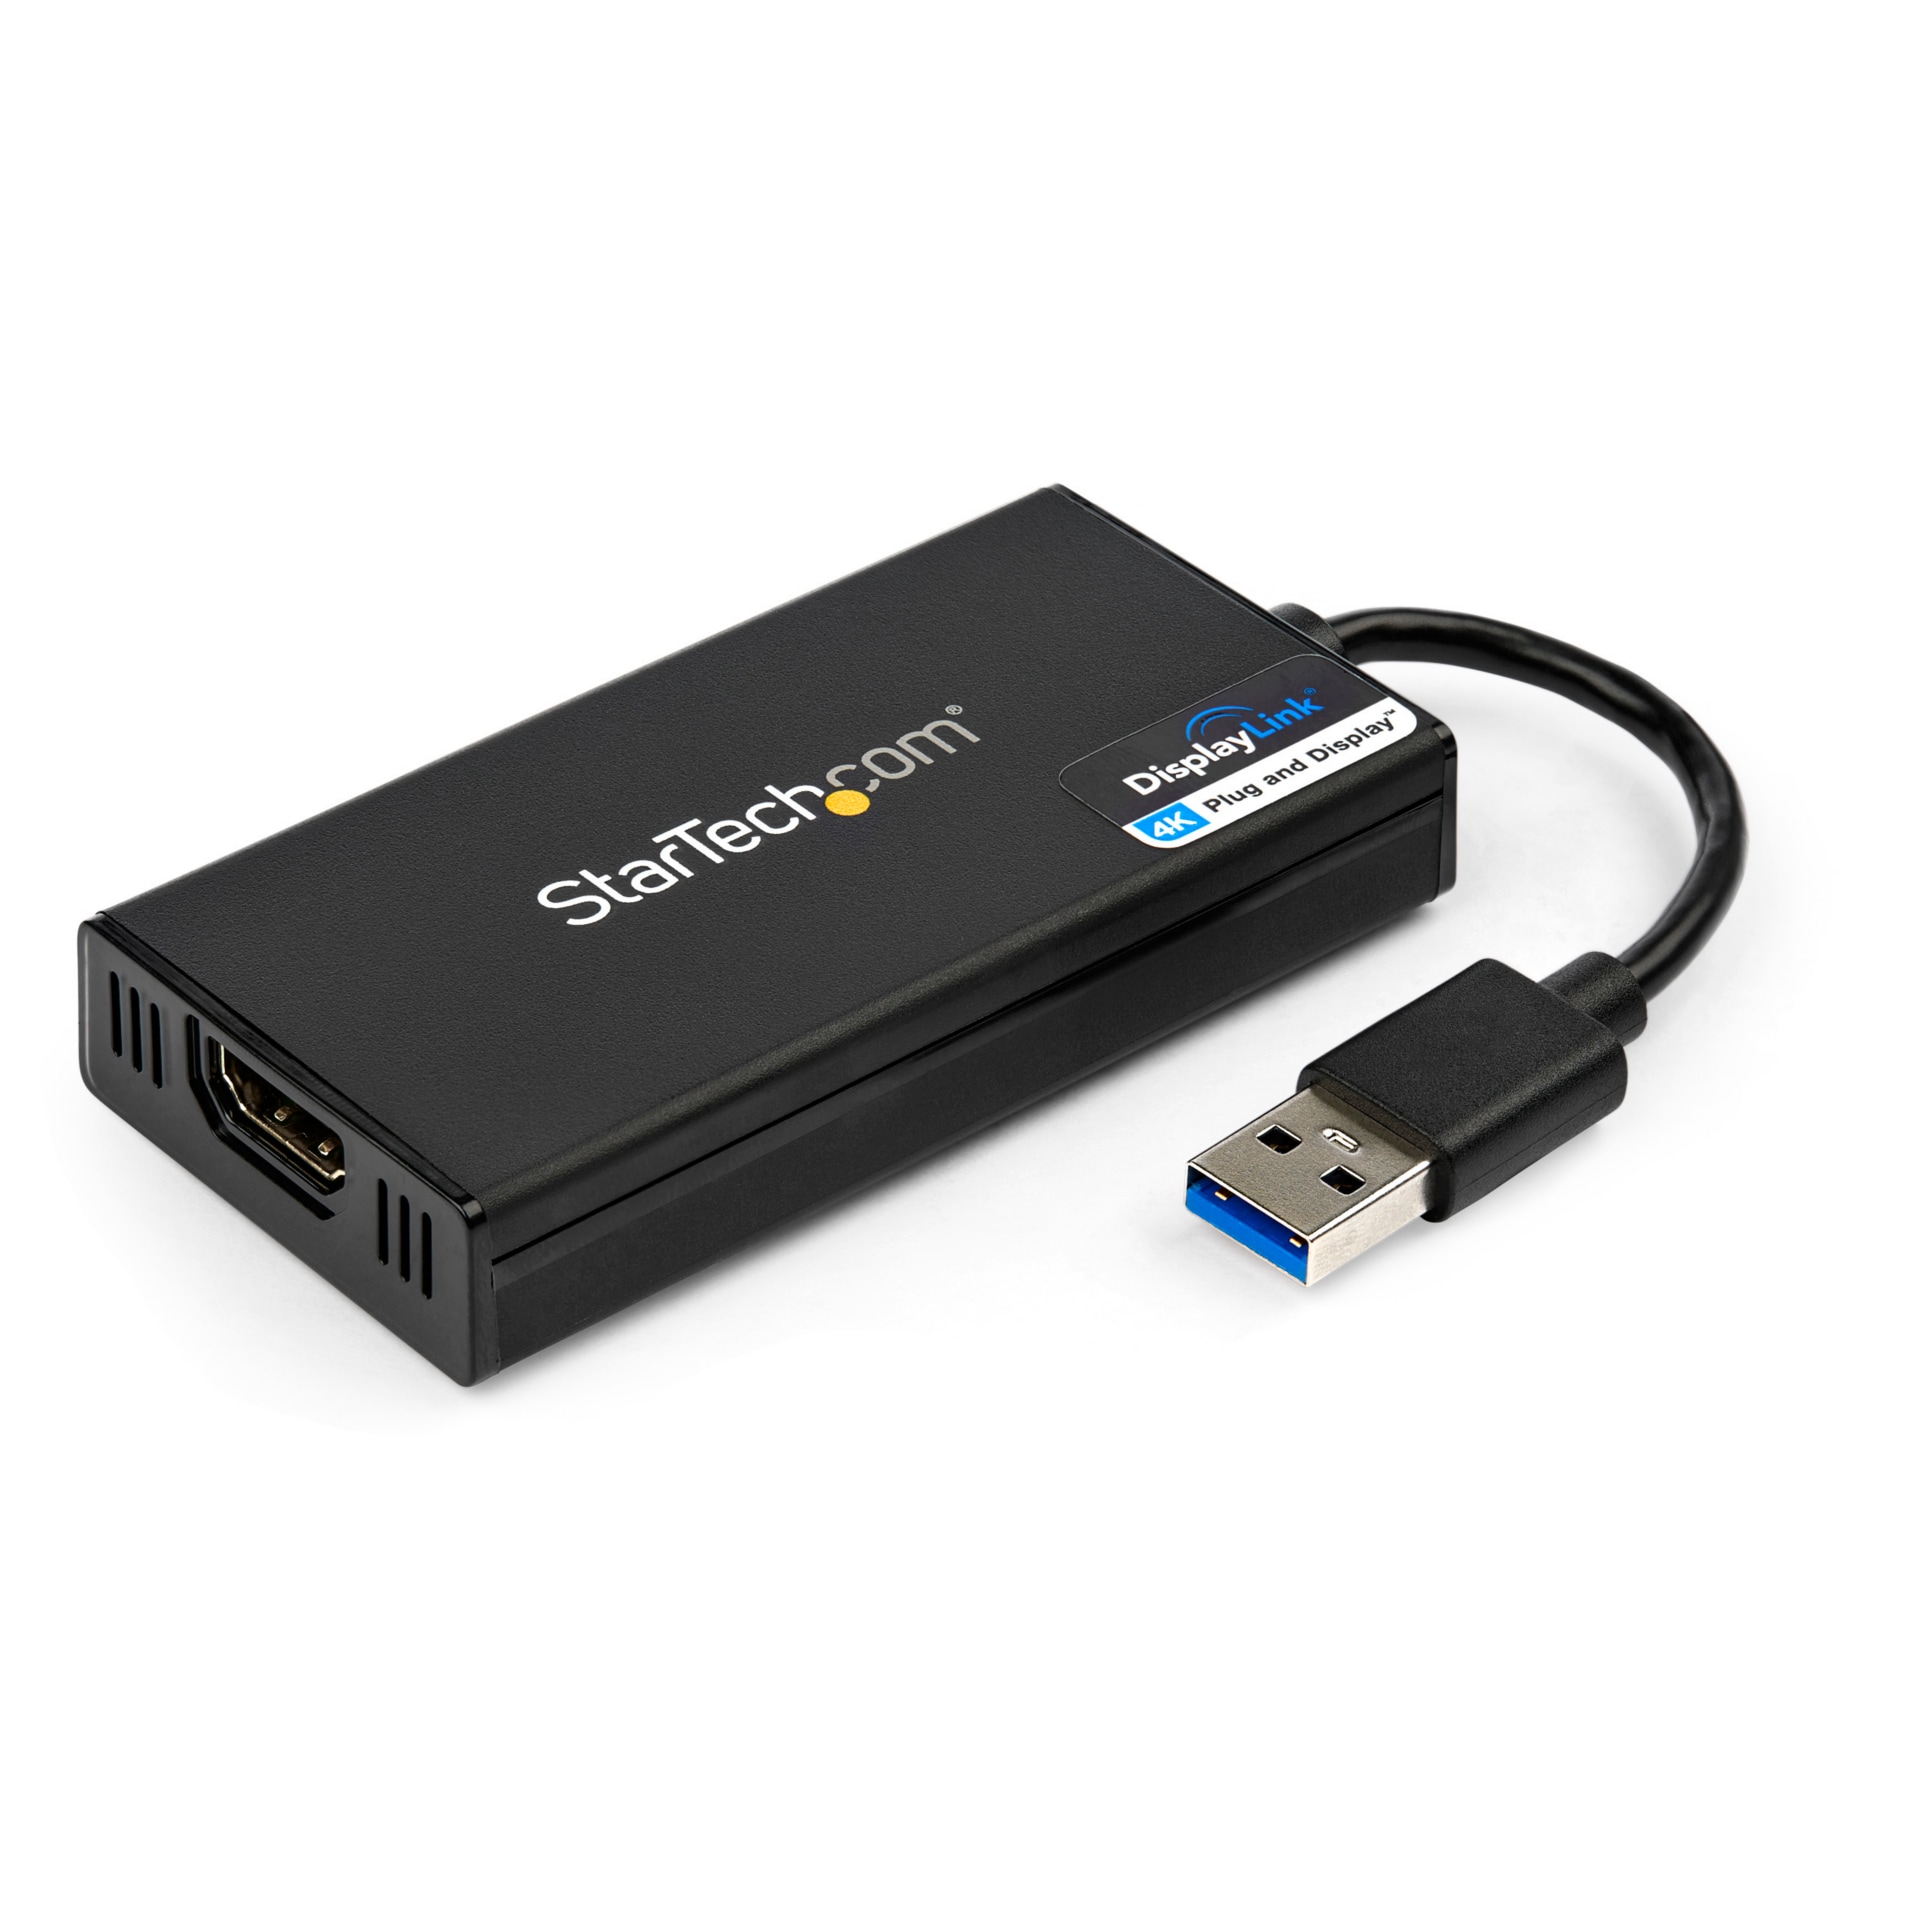 StarTech.com USB 3.0 to HDMI Adapter - 4K 30Hz External Video Graphics Card